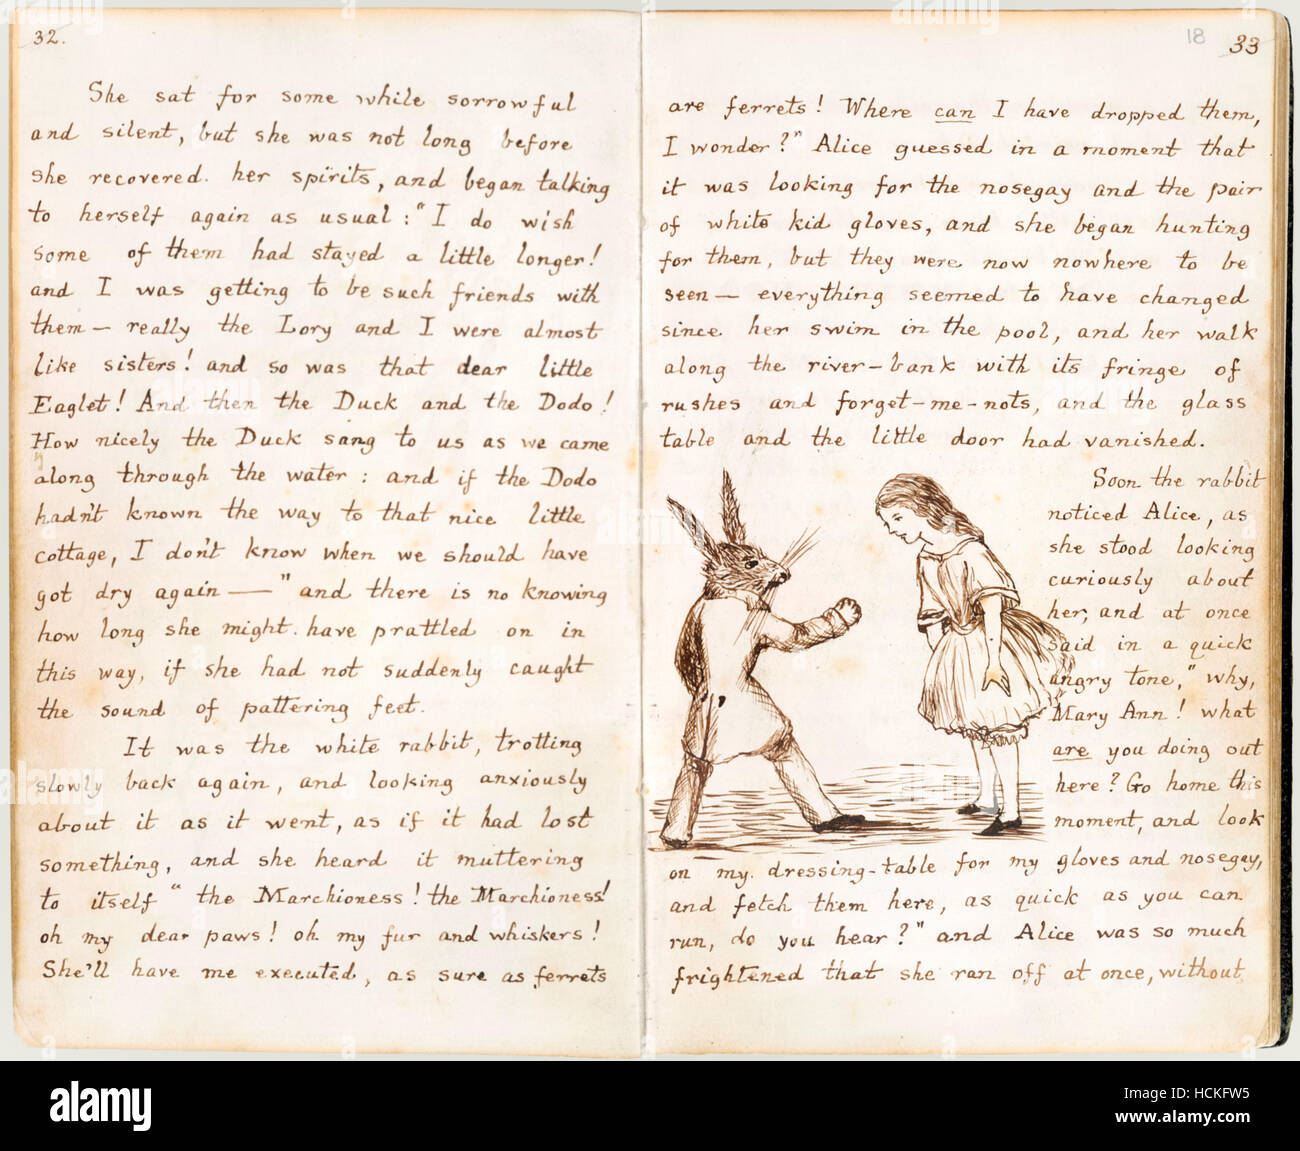 El conejo busca su nosegay y guante blanco, desde el manuscrito original de "Alice's Adventures Under Ground' por Charles Lutwidge Dodgson (1832-1898) dada a Alice Liddell en noviembre de 1864 y publicado bajo el título de "Alice's Adventures in Wonderland" en 1865 bajo el seudónimo de Lewis Carroll. Foto de stock